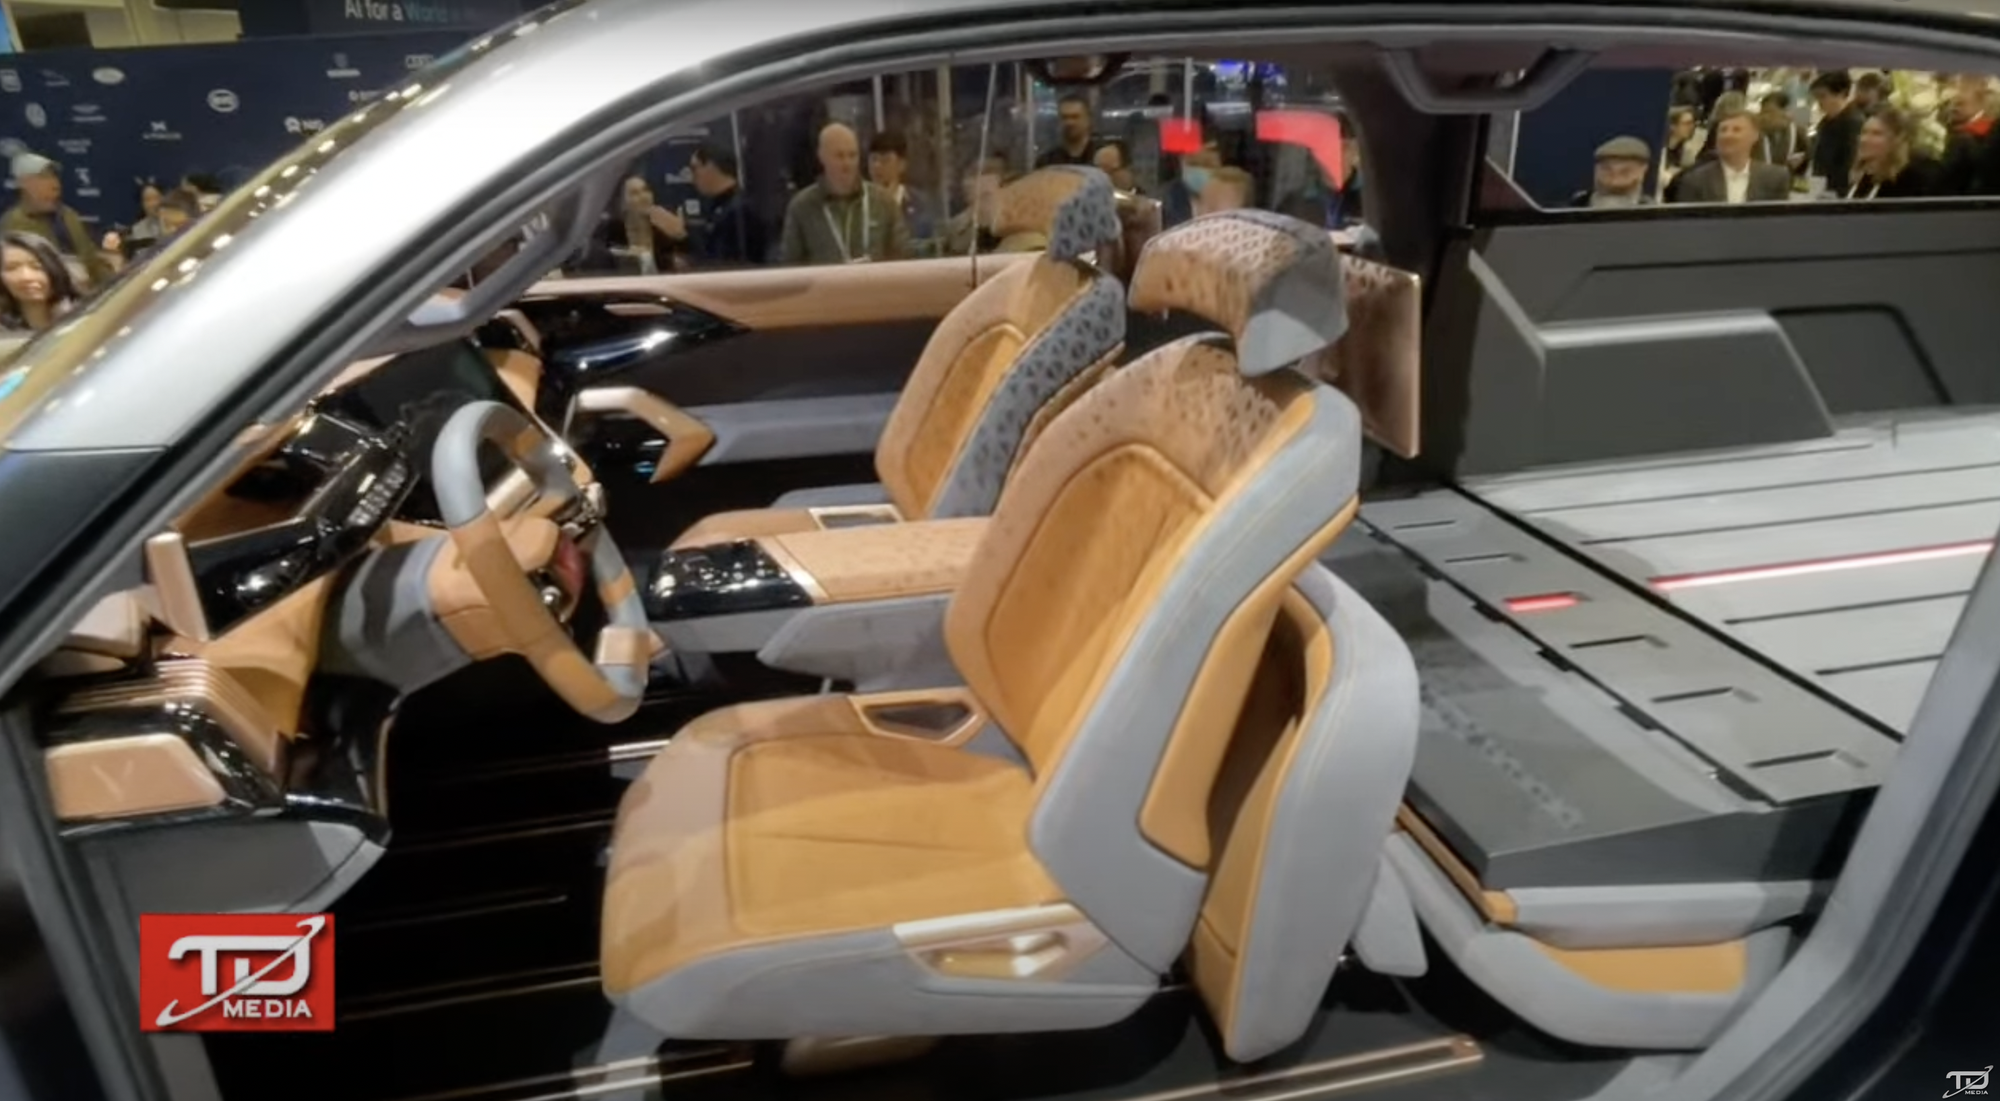 Bán tải VinFast ra mắt với thiết kế như xe viễn tưởng: Cửa mở ngược như Rolls-Royce, trần kính cực lớn - Ảnh 26.